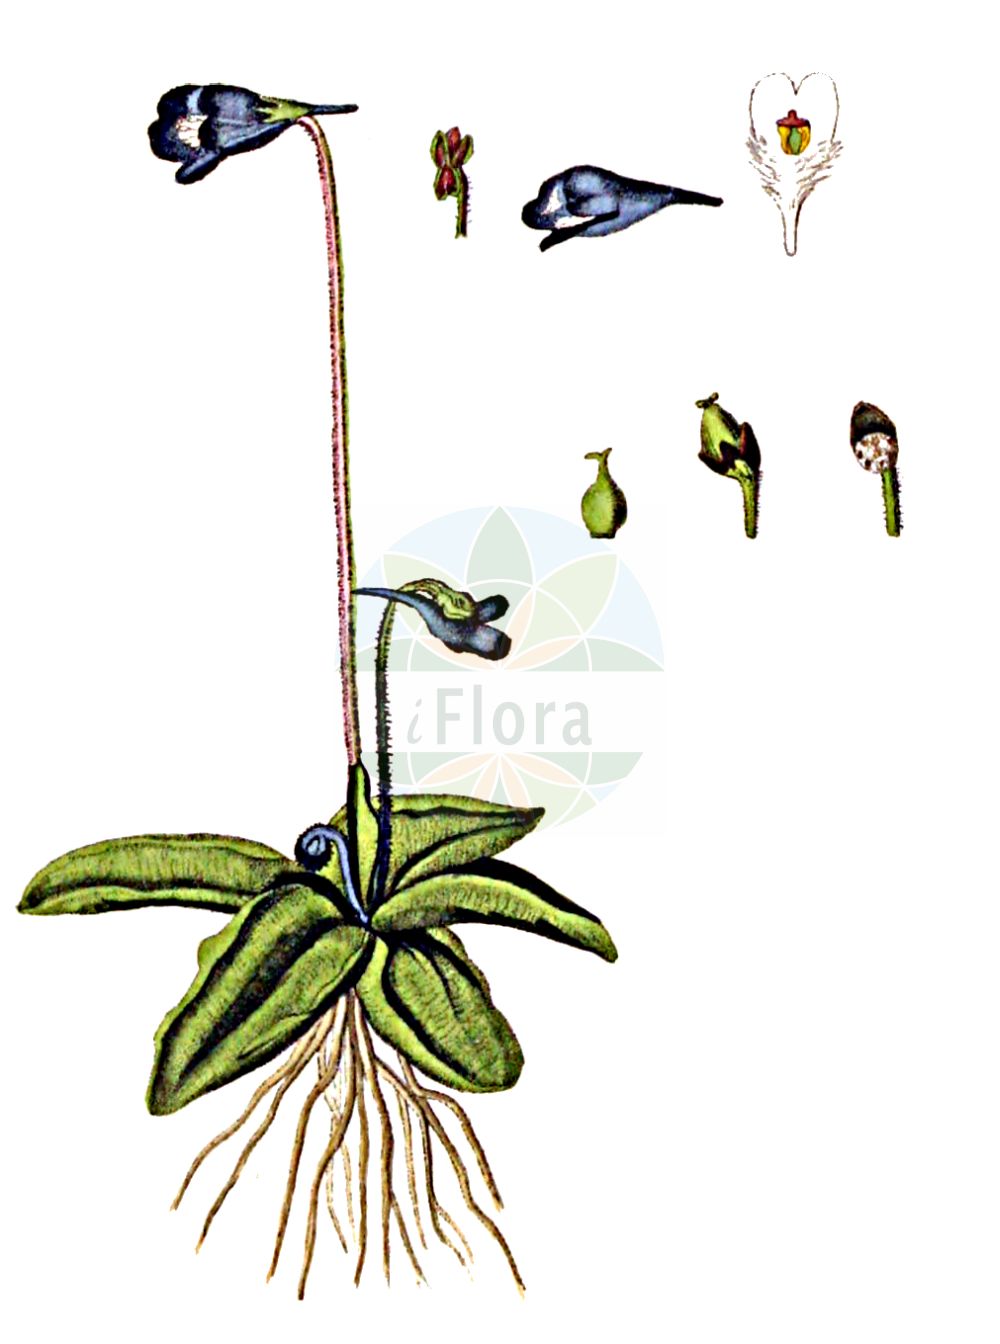 Historische Abbildung von Pinguicula vulgaris (Gewöhnliches Fettkraut - Common Butterwort). Das Bild zeigt Blatt, Bluete, Frucht und Same. ---- Historical Drawing of Pinguicula vulgaris (Gewöhnliches Fettkraut - Common Butterwort). The image is showing leaf, flower, fruit and seed.(Pinguicula vulgaris,Gewöhnliches Fettkraut,Common Butterwort,Pinguicula bicolor,Pinguicula gypsophila,Pinguicula norica,Pinguicula vulgaris,Pinguicula vulgaris subsp. bicolor,Gewoehnliches Fettkraut,Common Butterwort,Beanweed,Butterwort,Pinguicula,Fettkraut,Butterwort,Lentibulariaceae,Wasserschlauchgewächse,Bladderwort family,Blatt,Bluete,Frucht,Same,leaf,flower,fruit,seed,Kops (1800-1934))